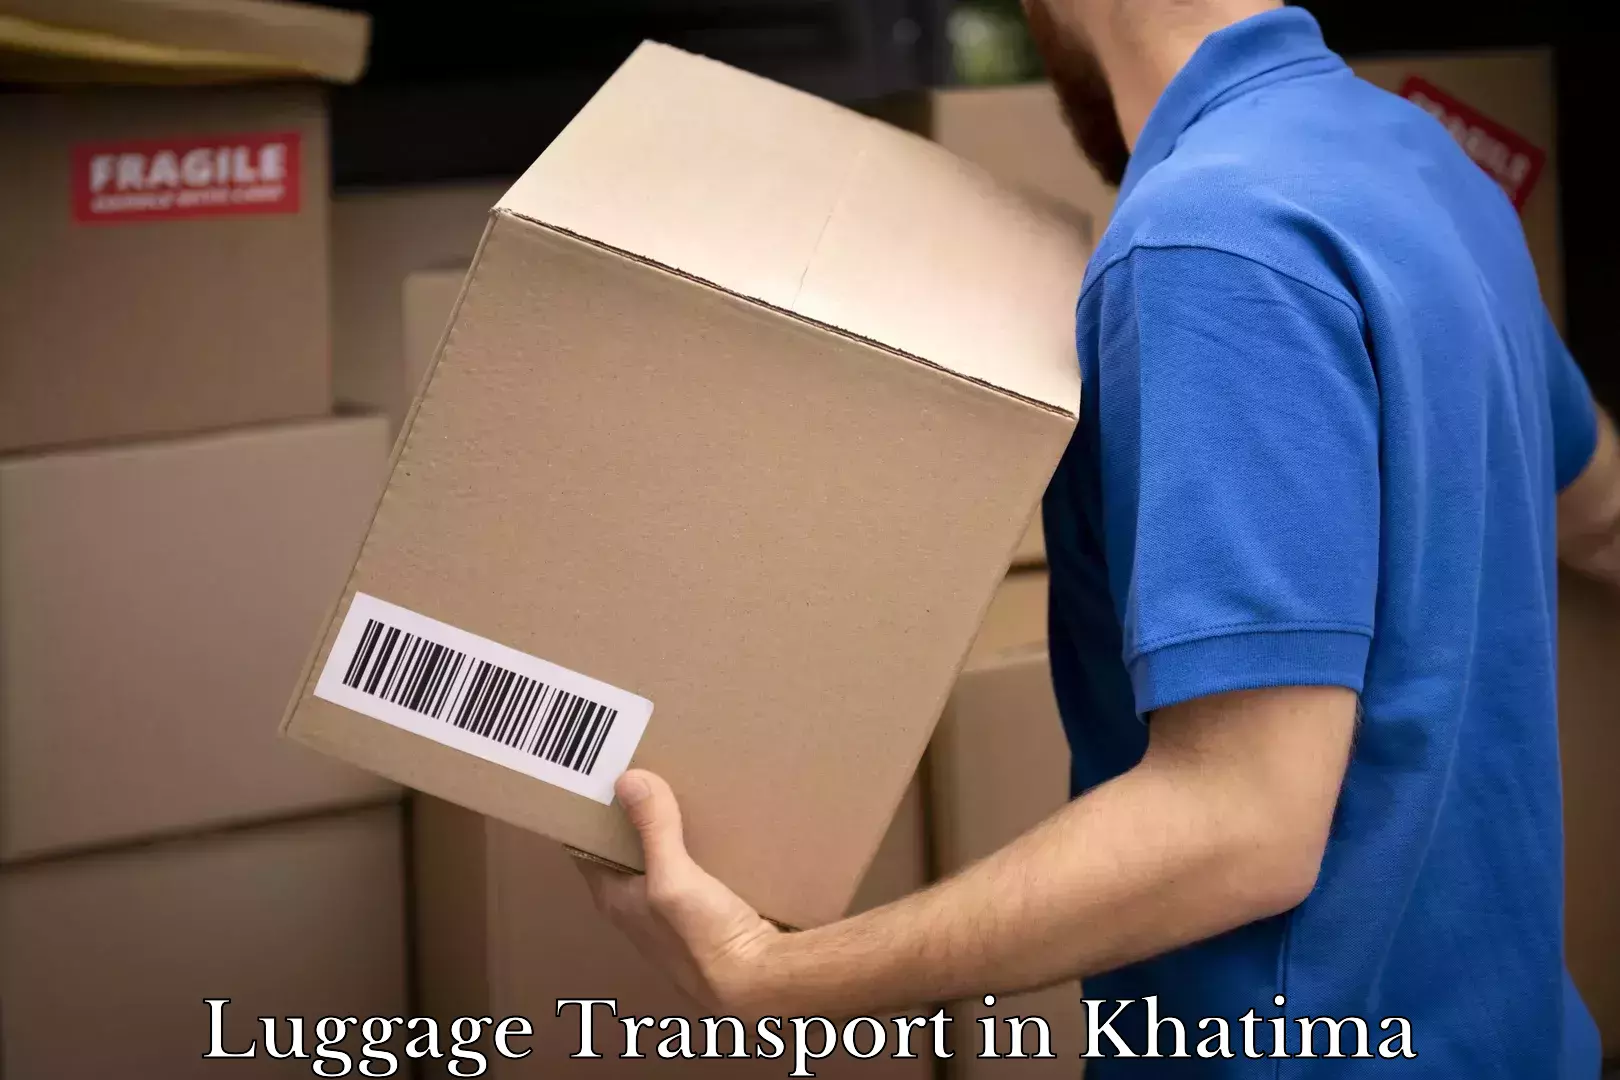 Luggage shipping estimate in Khatima